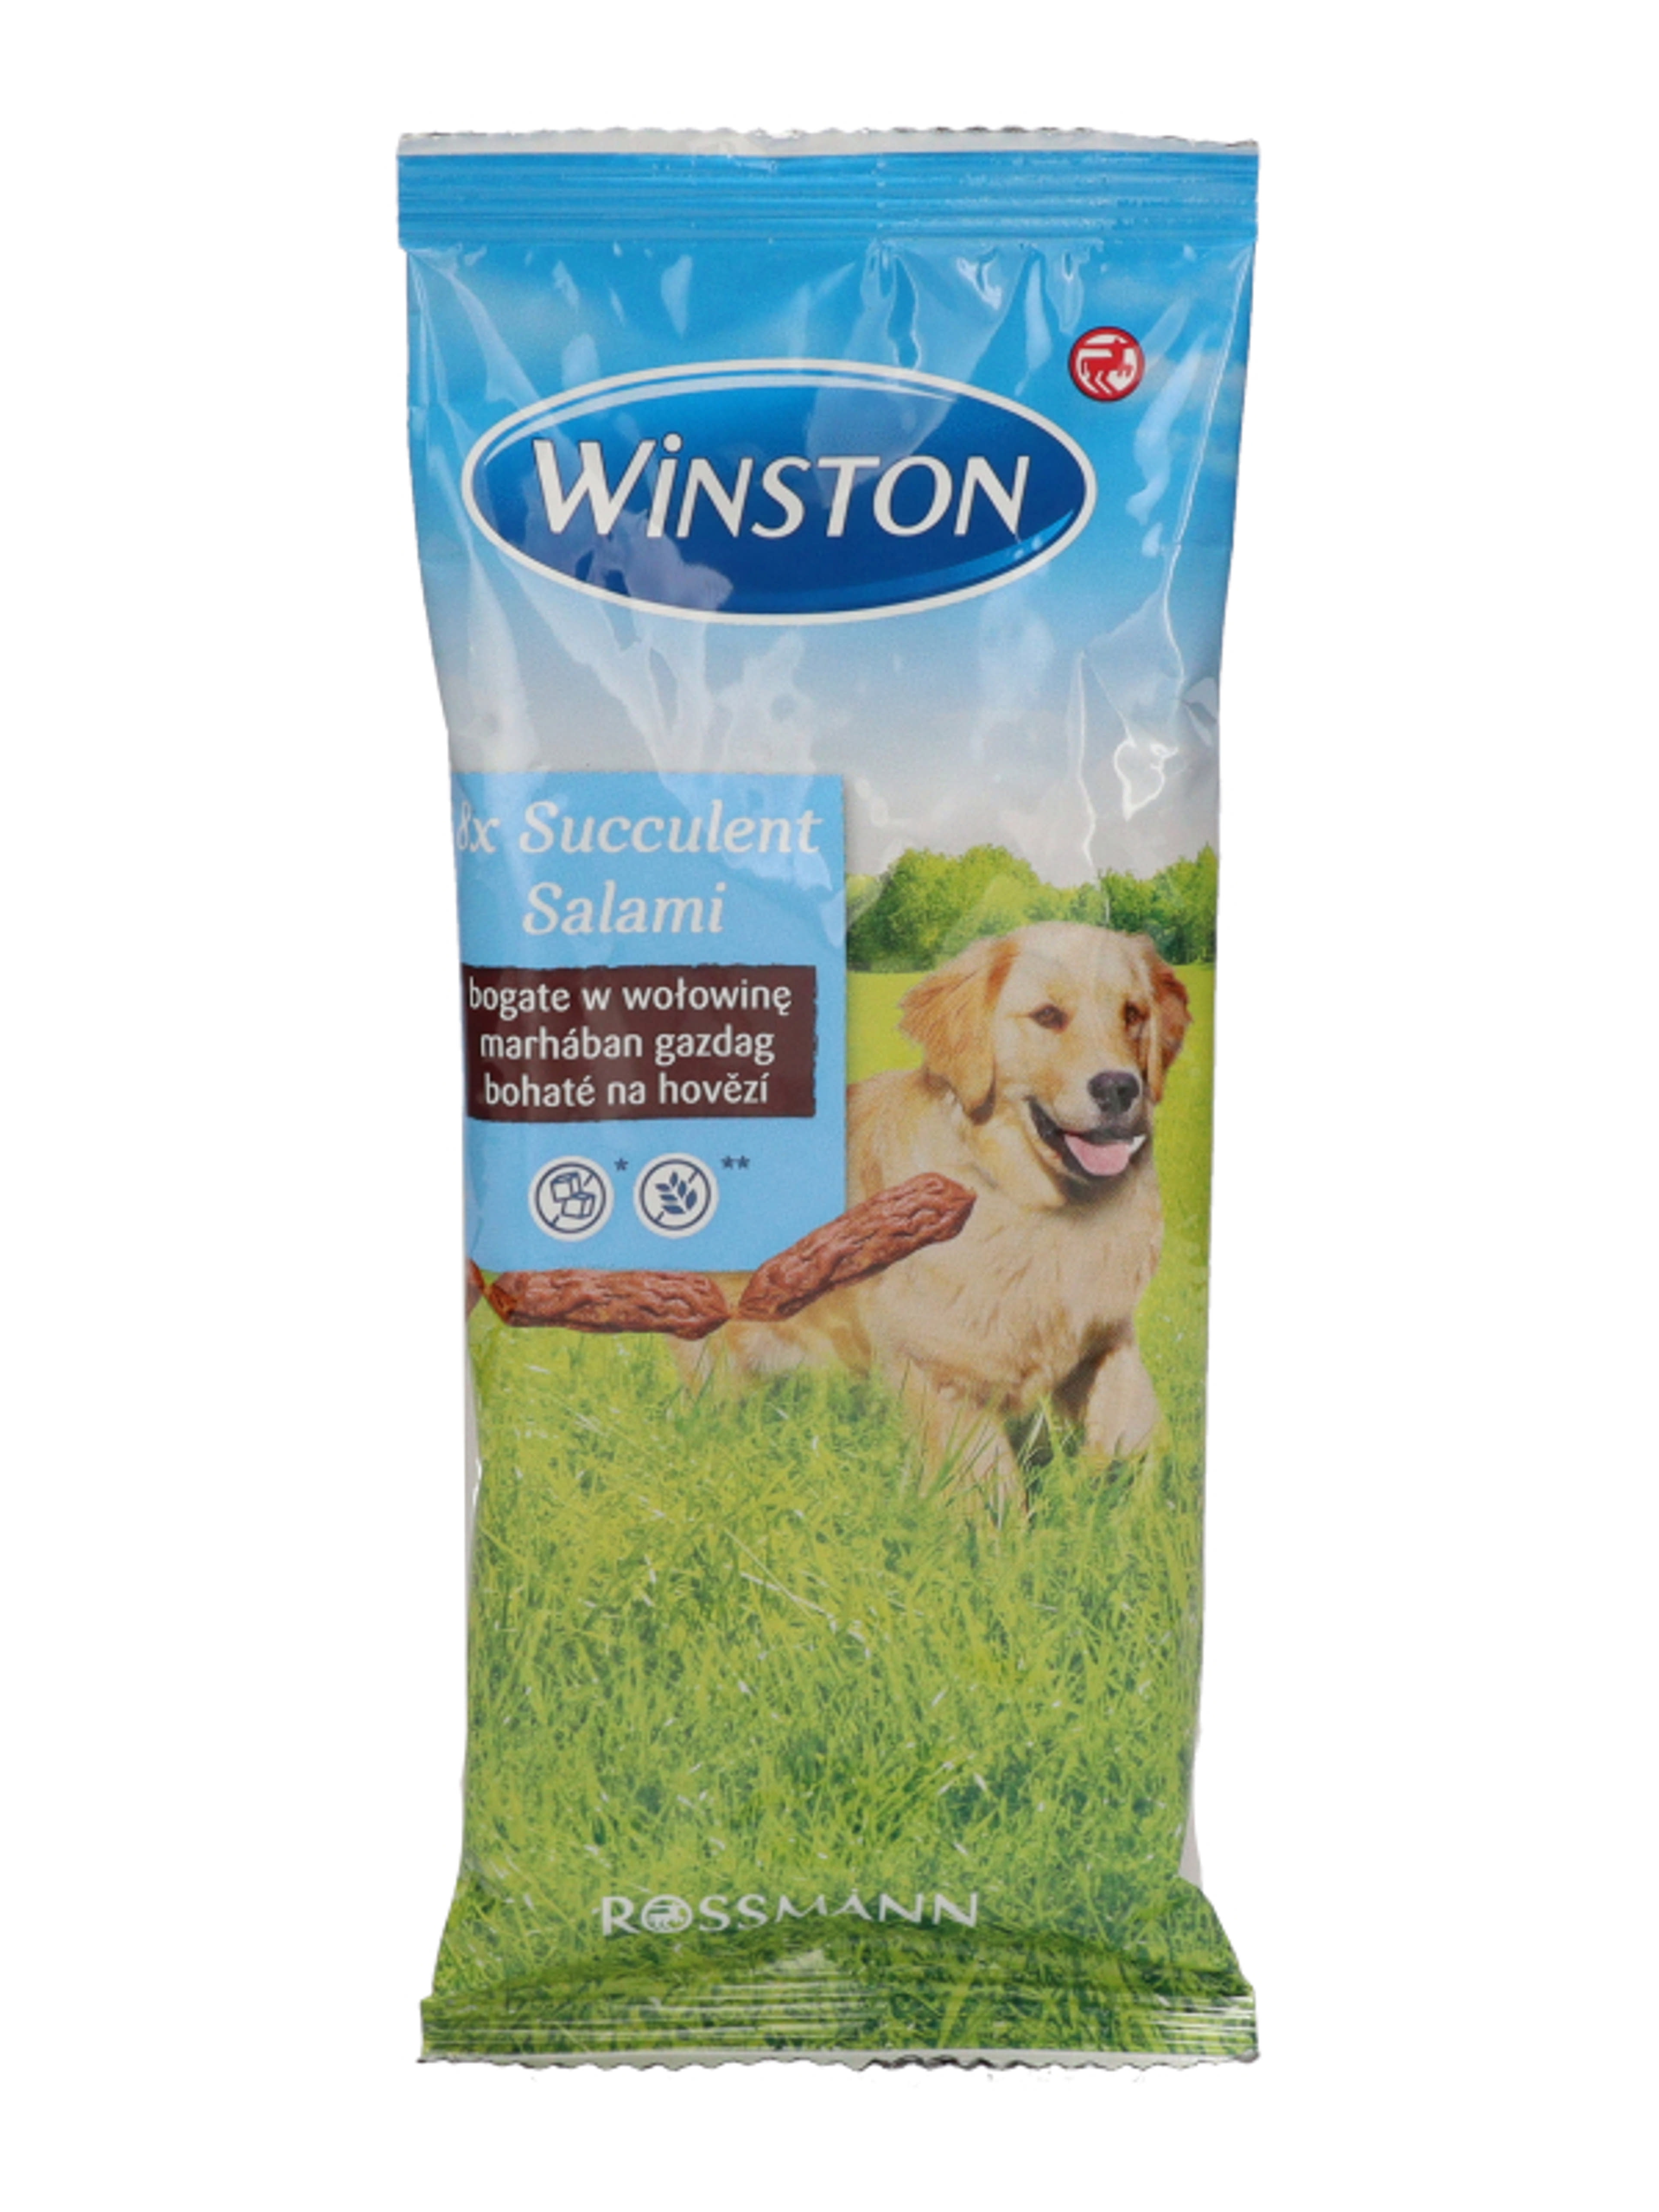 Winston jutalomfalat kutyáknak, szaftos szalálmi - 60 g - 8db-2